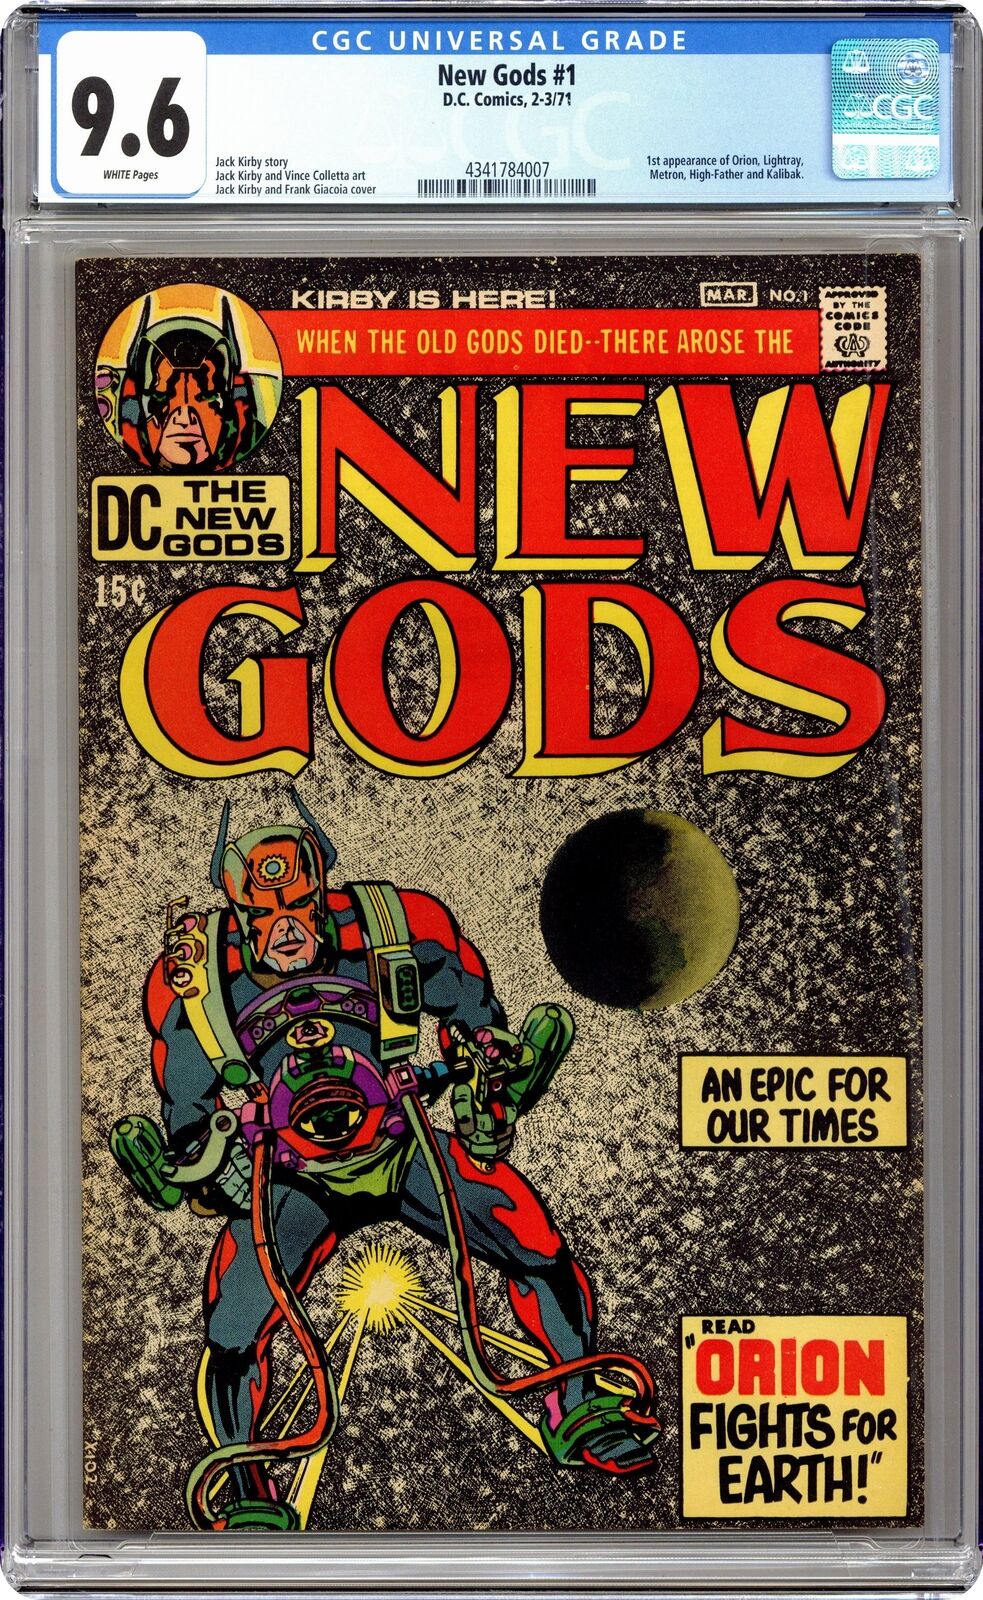 New Gods #1 CGC 9.6 1971 4341784007 1st app. Orion